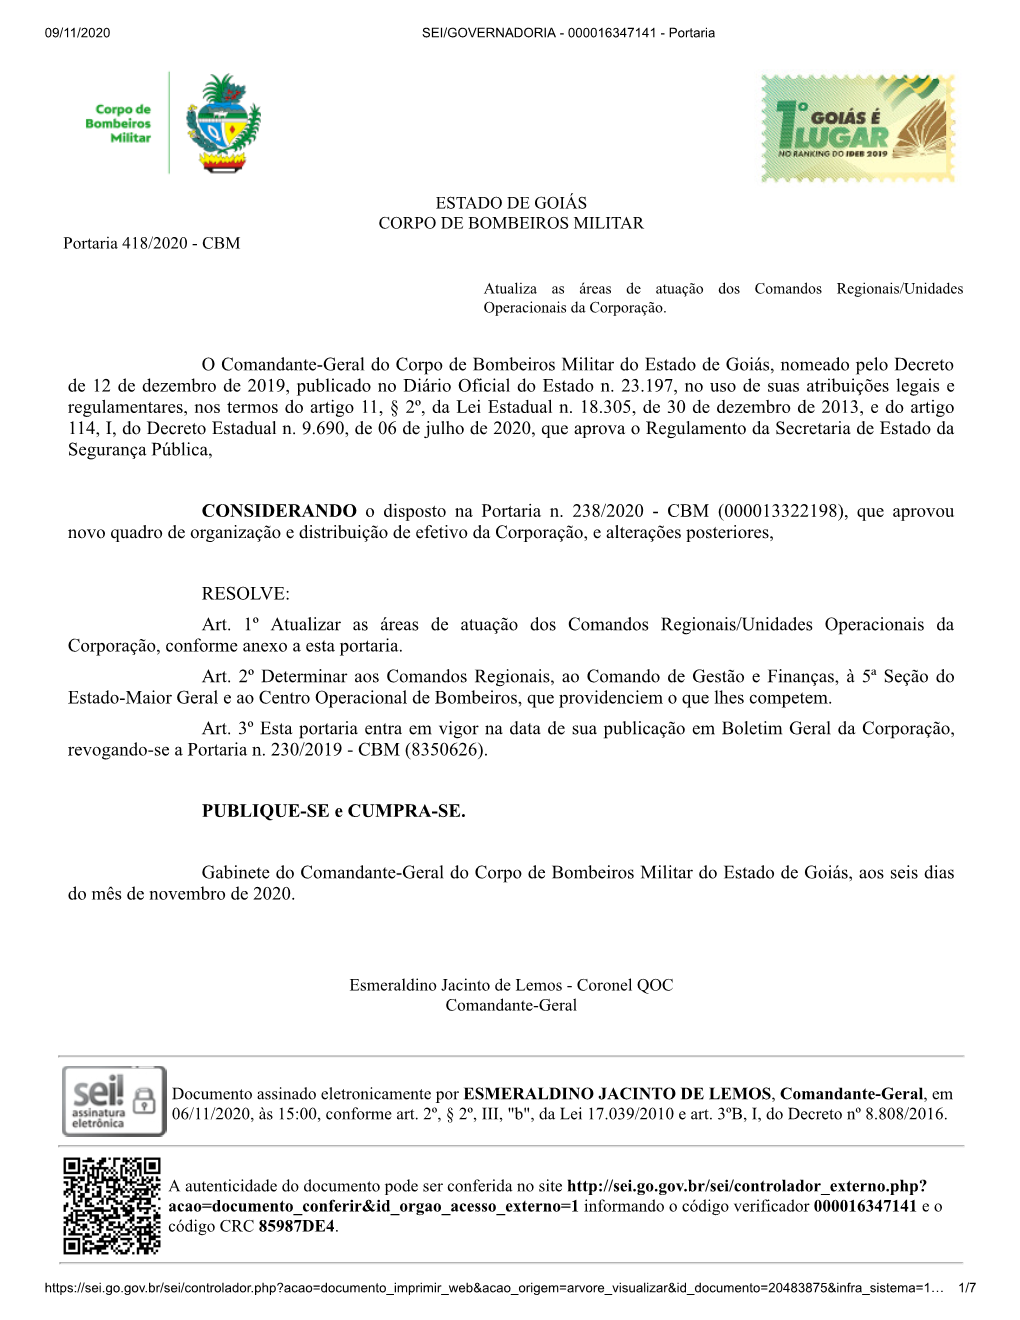 O Comandante-Geral Do Corpo De Bombeiros Militar Do Estado De Goiás, Nomeado Pelo Decreto De 12 De Dezembro De 2019, Publicado No Diário Oficial Do Estado N